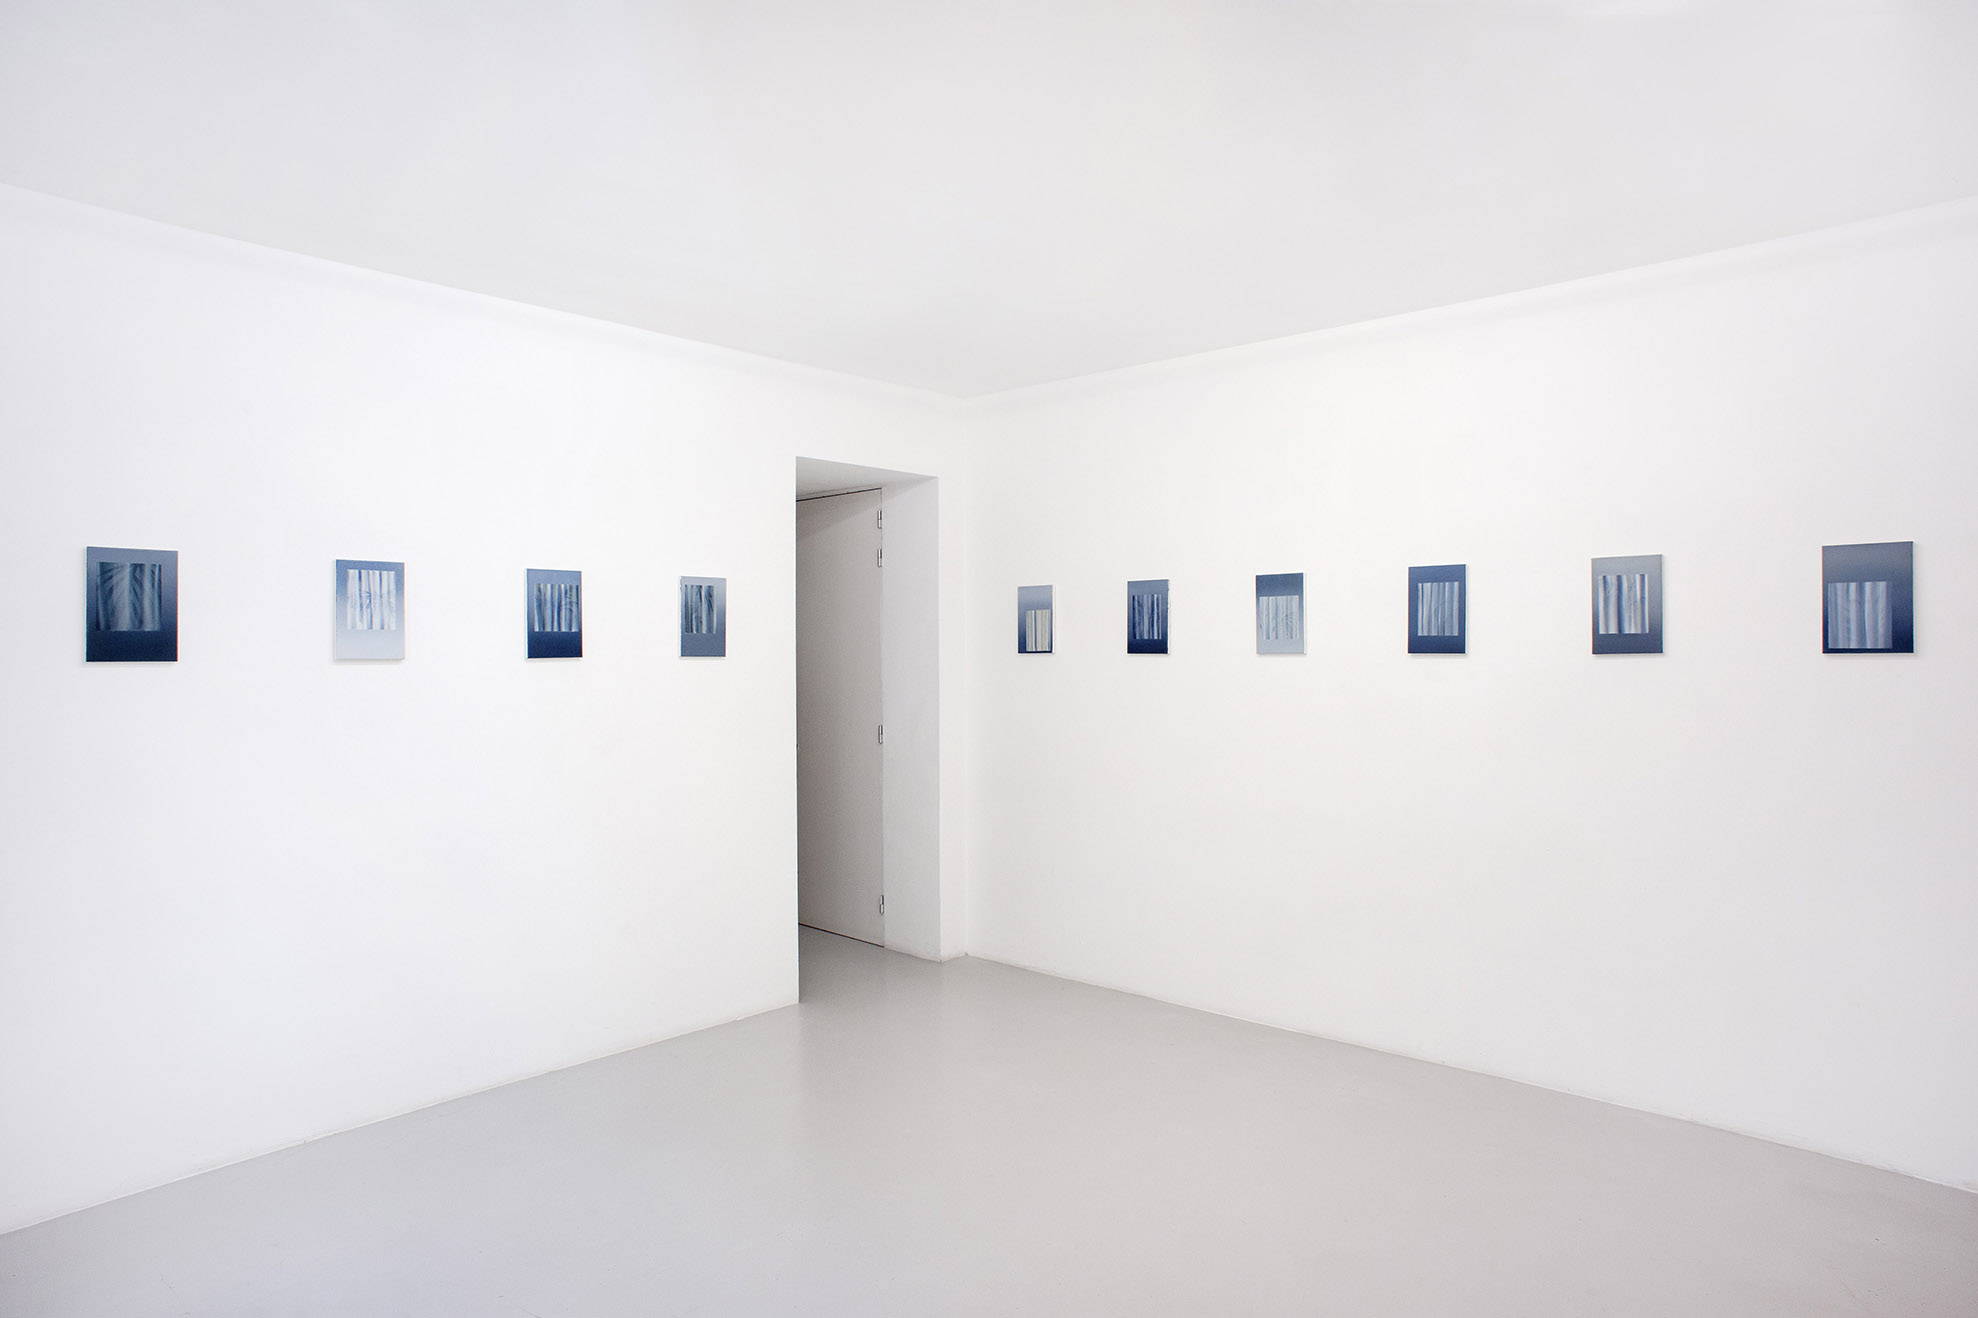 Clément Davout, Simples joies, exhibtion view 2, 2022